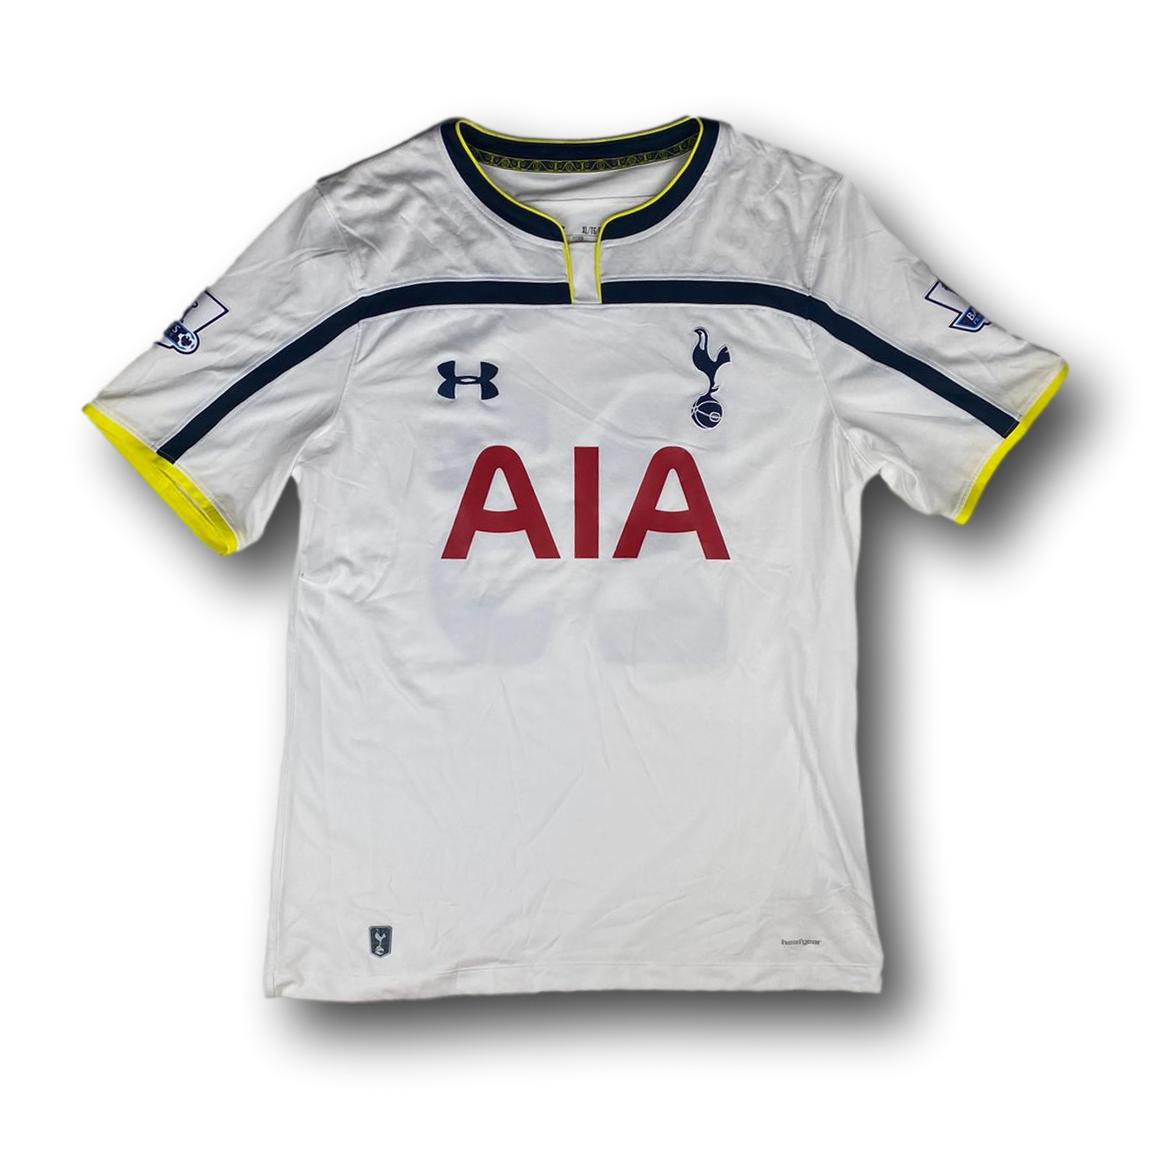 Fussballtrikot Tottenham Hotspurs - 2014-15 - heim - under armour - Eriksen#23 XL